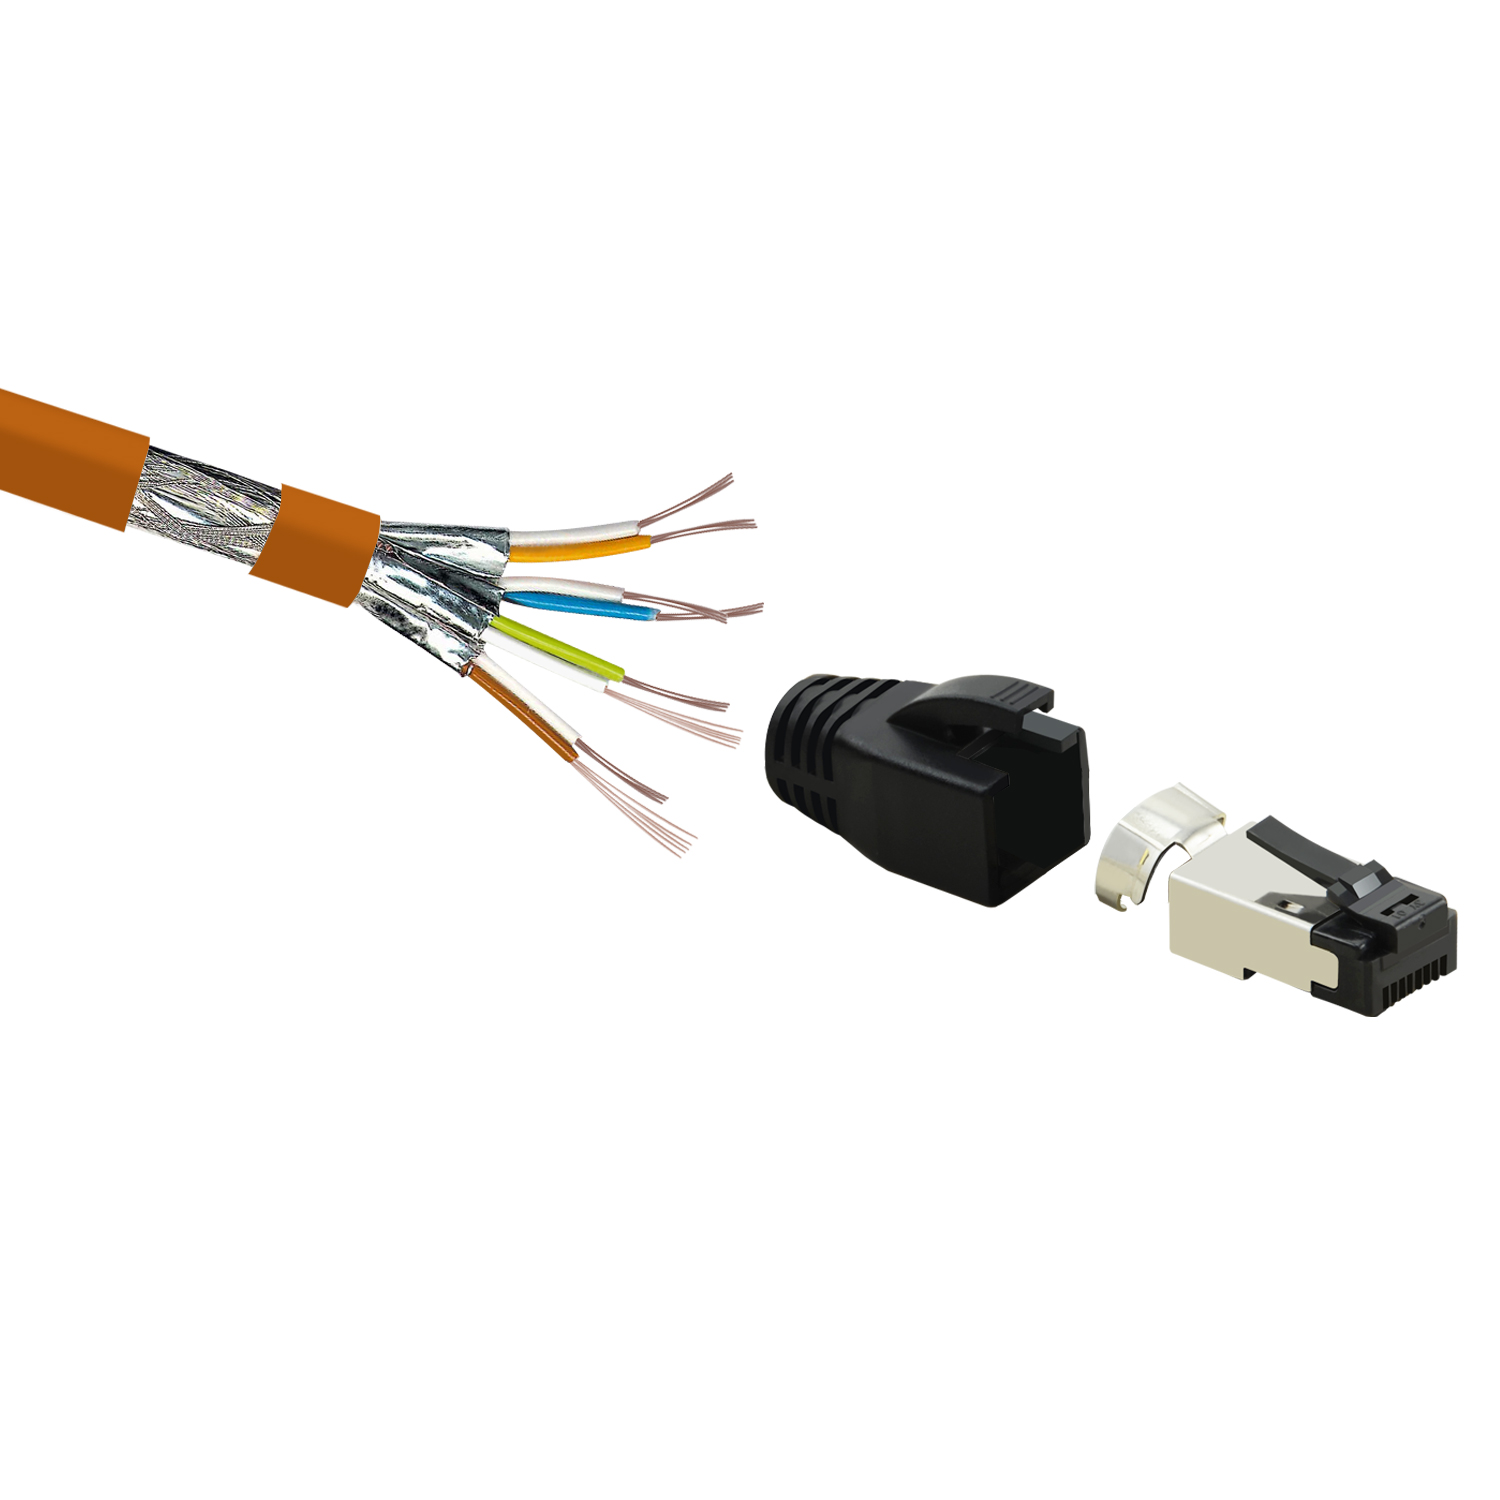 Netzwerkkabel, 10er 40 orange, / TPFNET 2 GBit, 2m m Netzwerkkabel Pack Patchkabel S/FTP